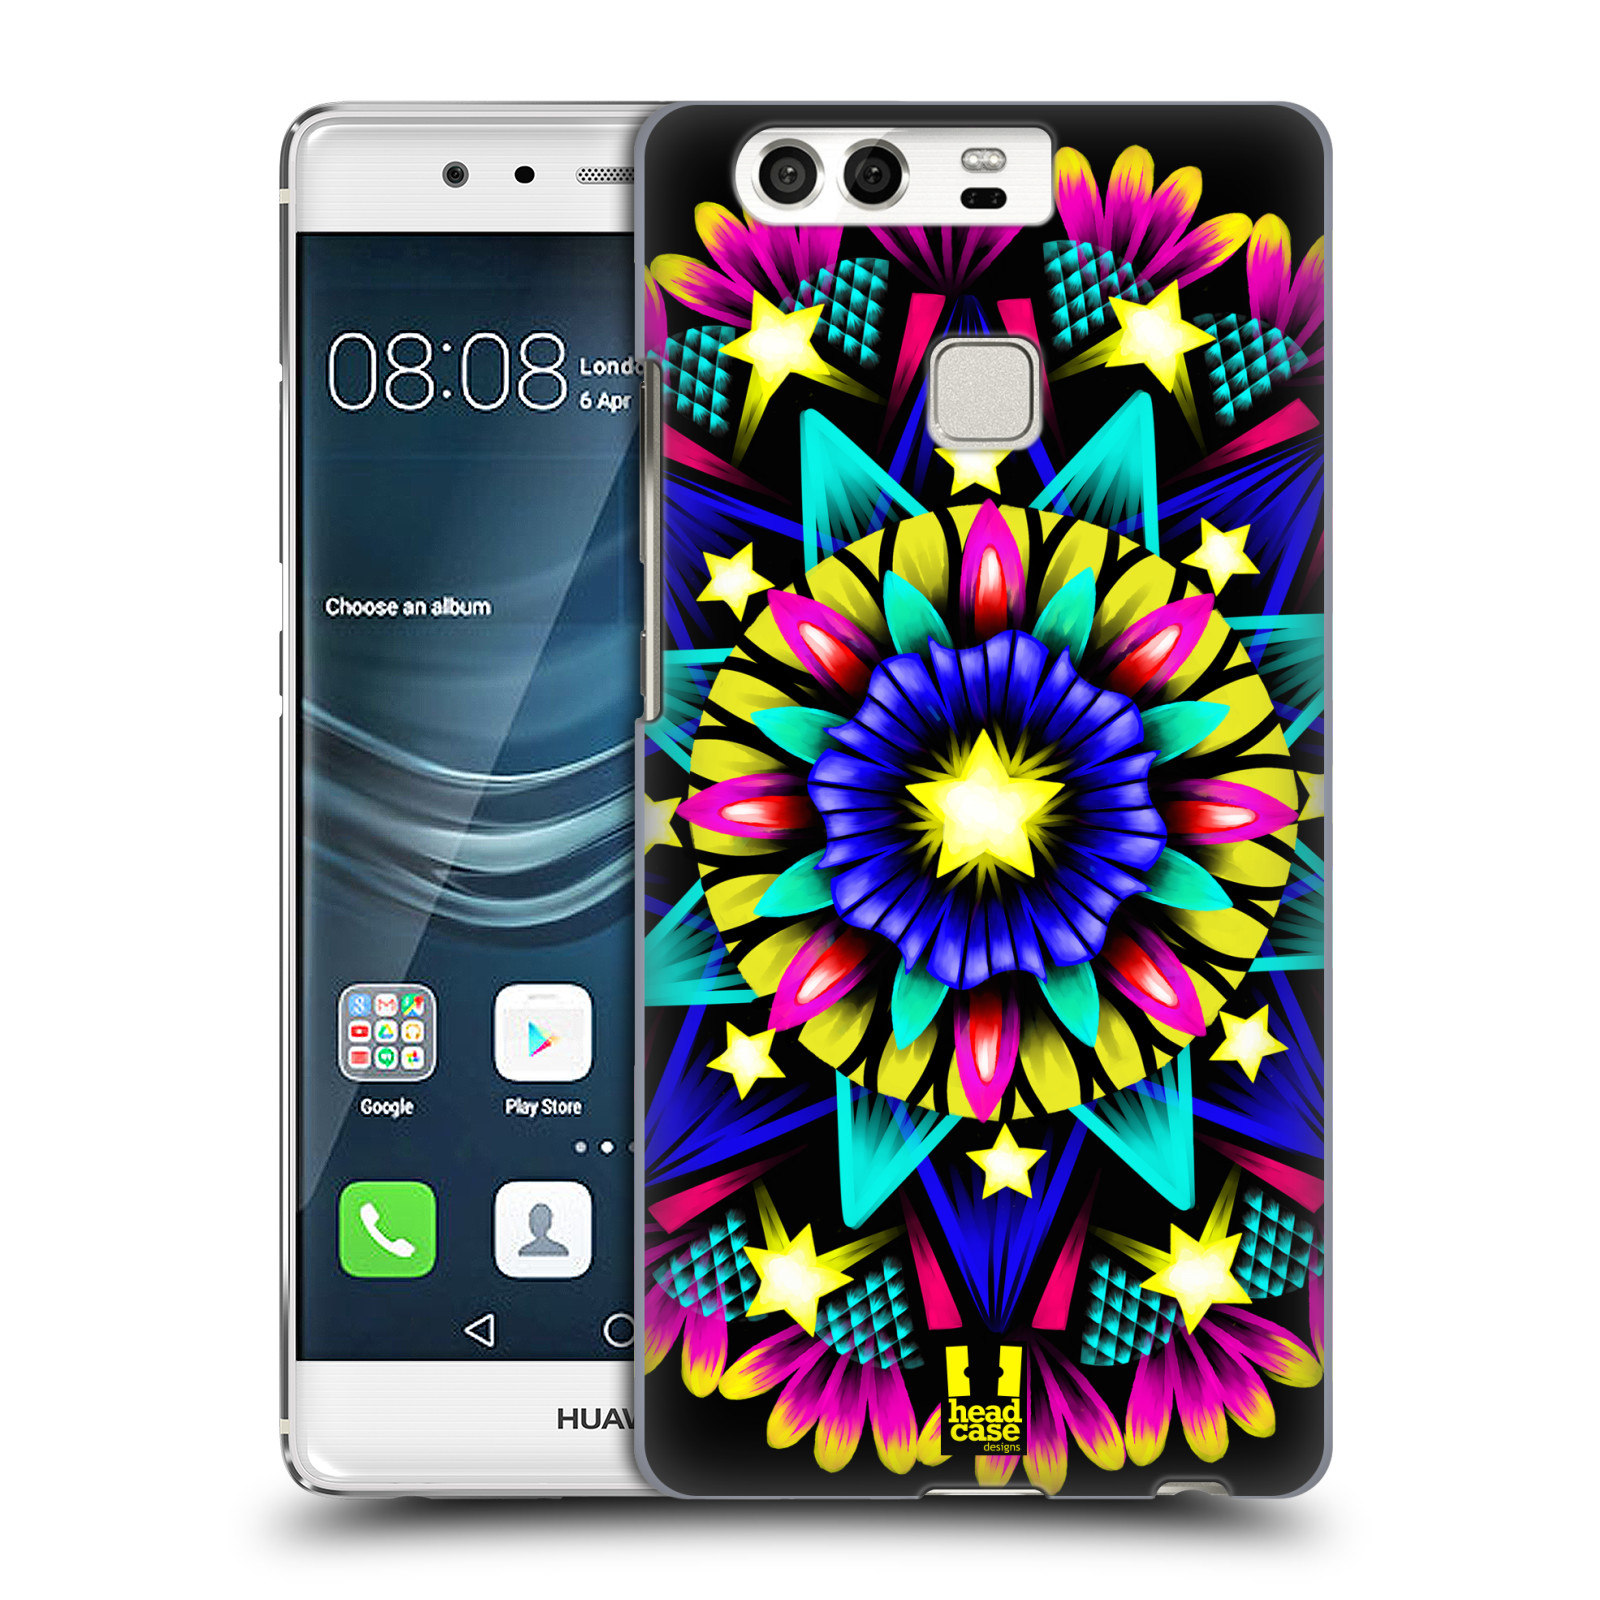 HEAD CASE plastový obal na mobil Huawei P9 / P9 DUAL SIM vzor Indie Mandala kaleidoskop barevný vzor HVĚZDA